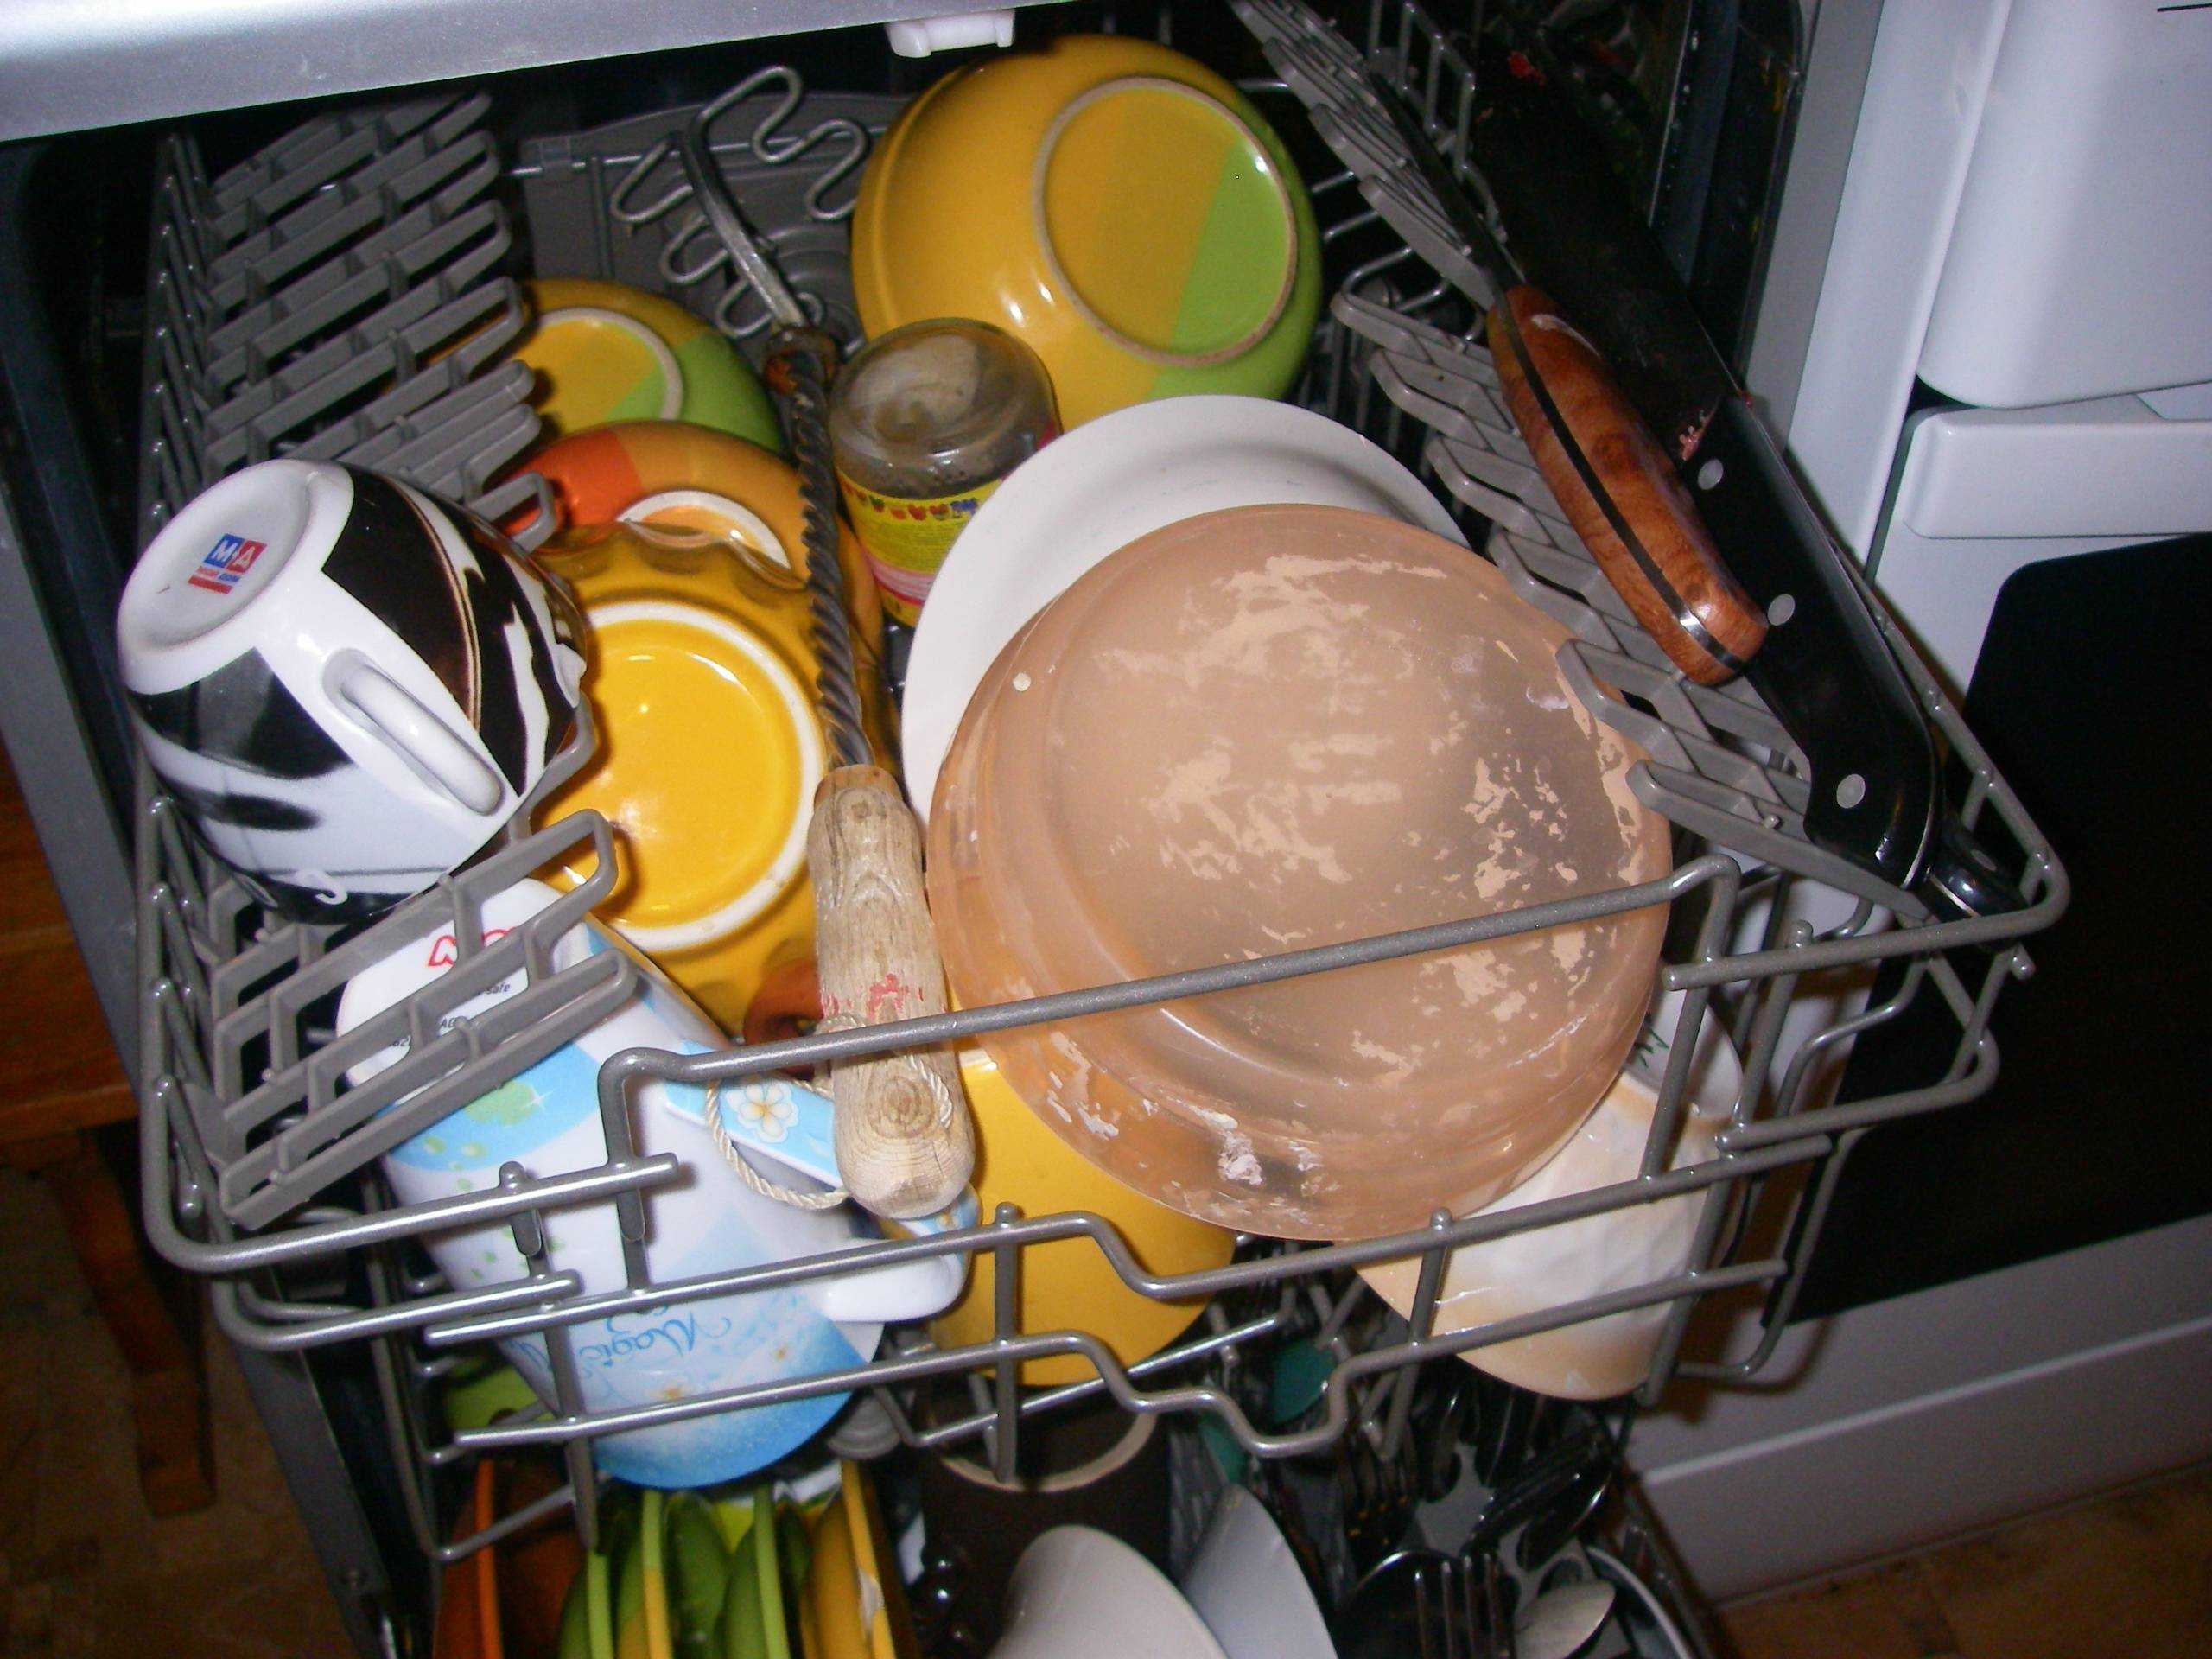 Белый налет в посудомоечной машине: почему появляется + как устранить